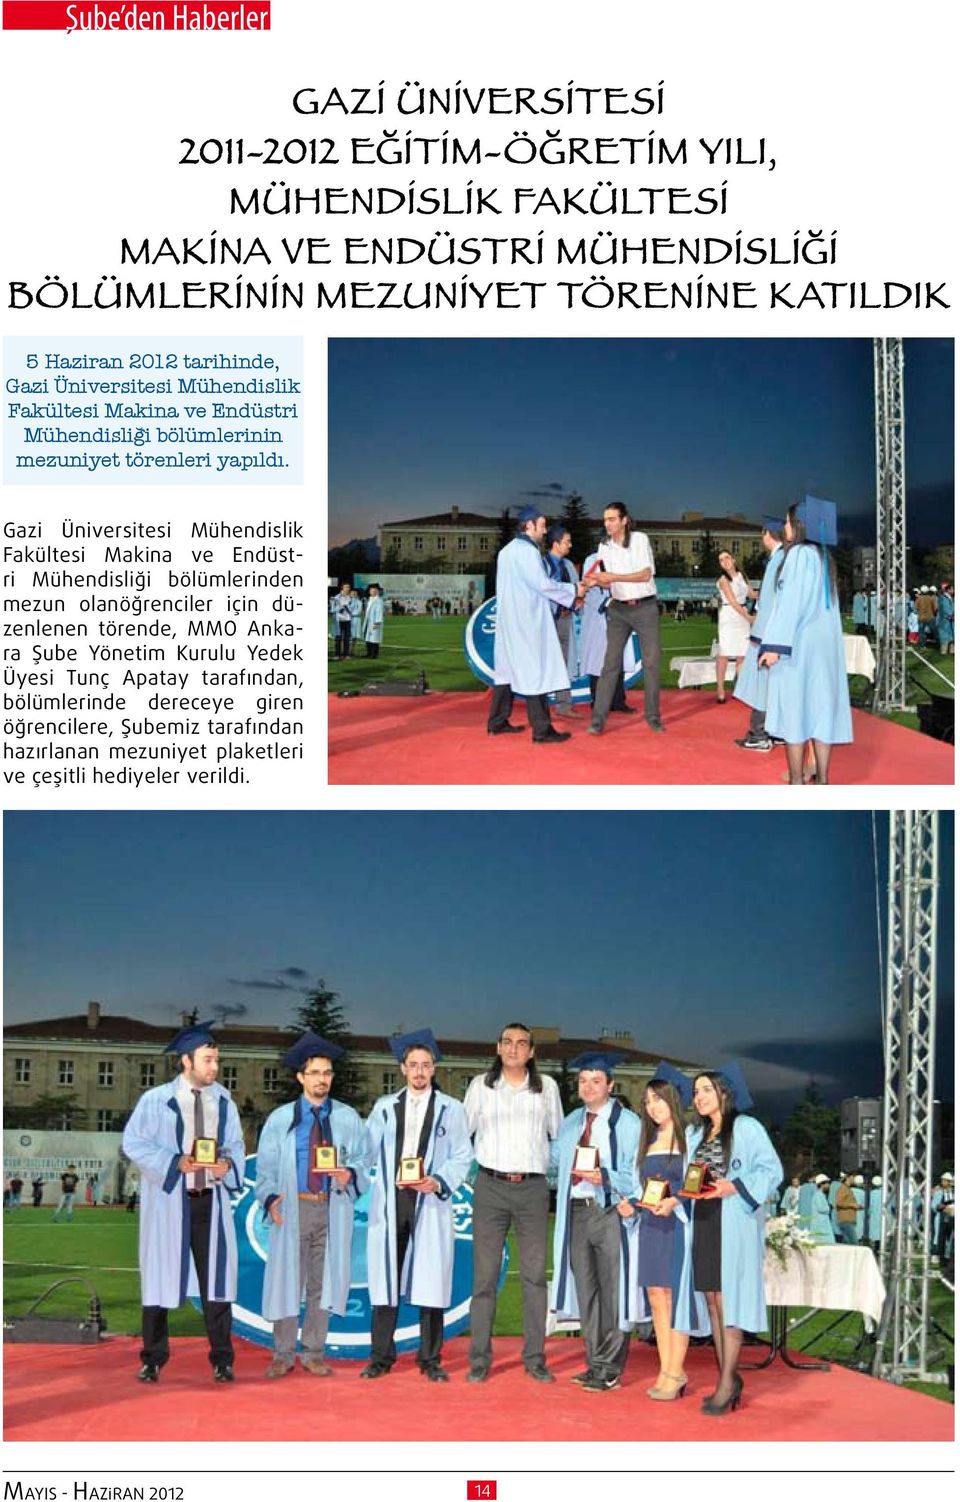 Gazi Üniversitesi Mühendislik Fakültesi Makina ve Endüstri Mühendisliği bölümlerinden mezun olanöğrenciler için düzenlenen törende, MMO Ankara Şube Yönetim